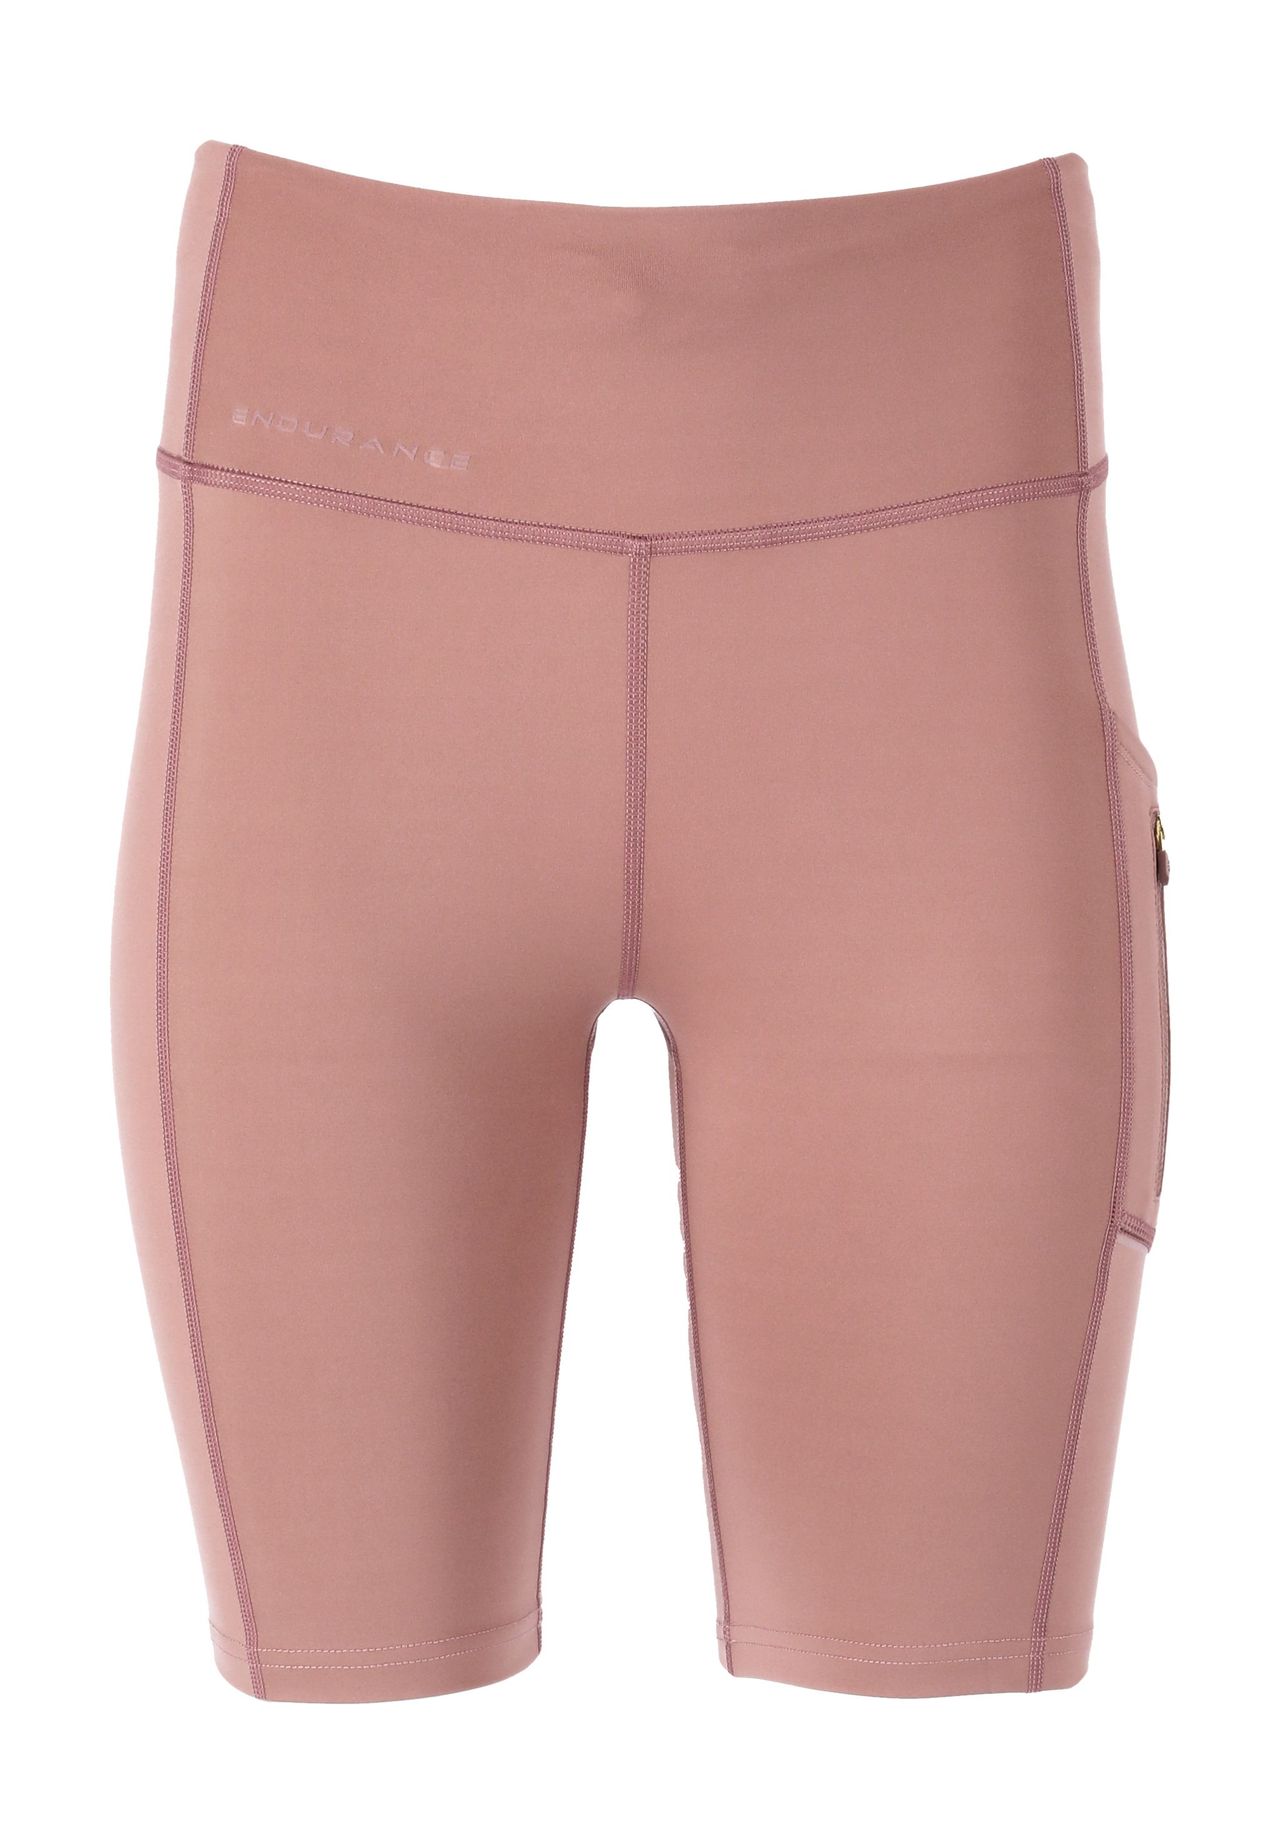 Schwarze shorts | kaufen GALERIA pink